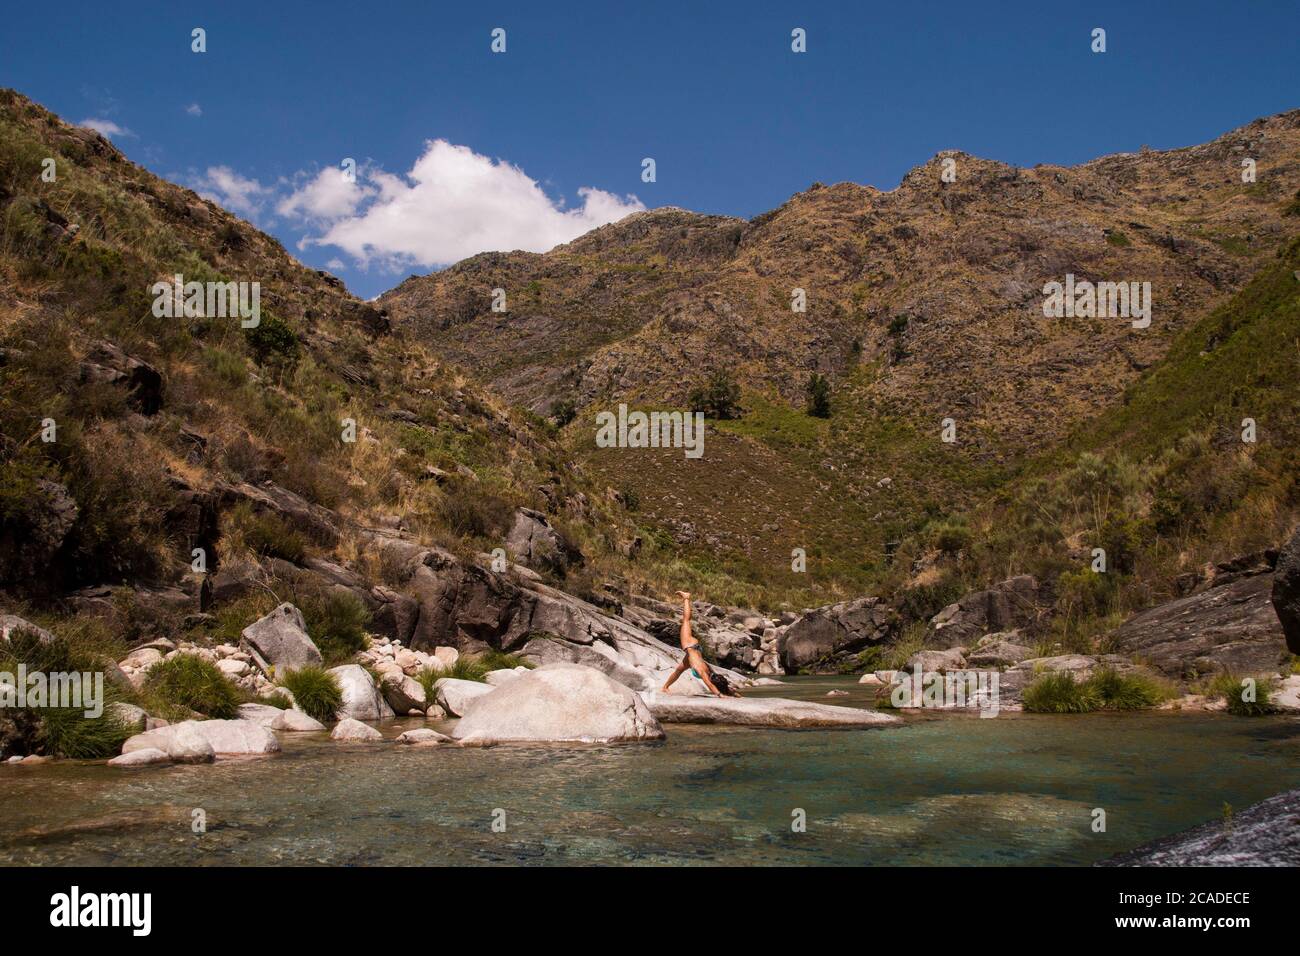 Pose de yoga sur une rive de lac entourée de montagnes. Environnement immaculé Banque D'Images